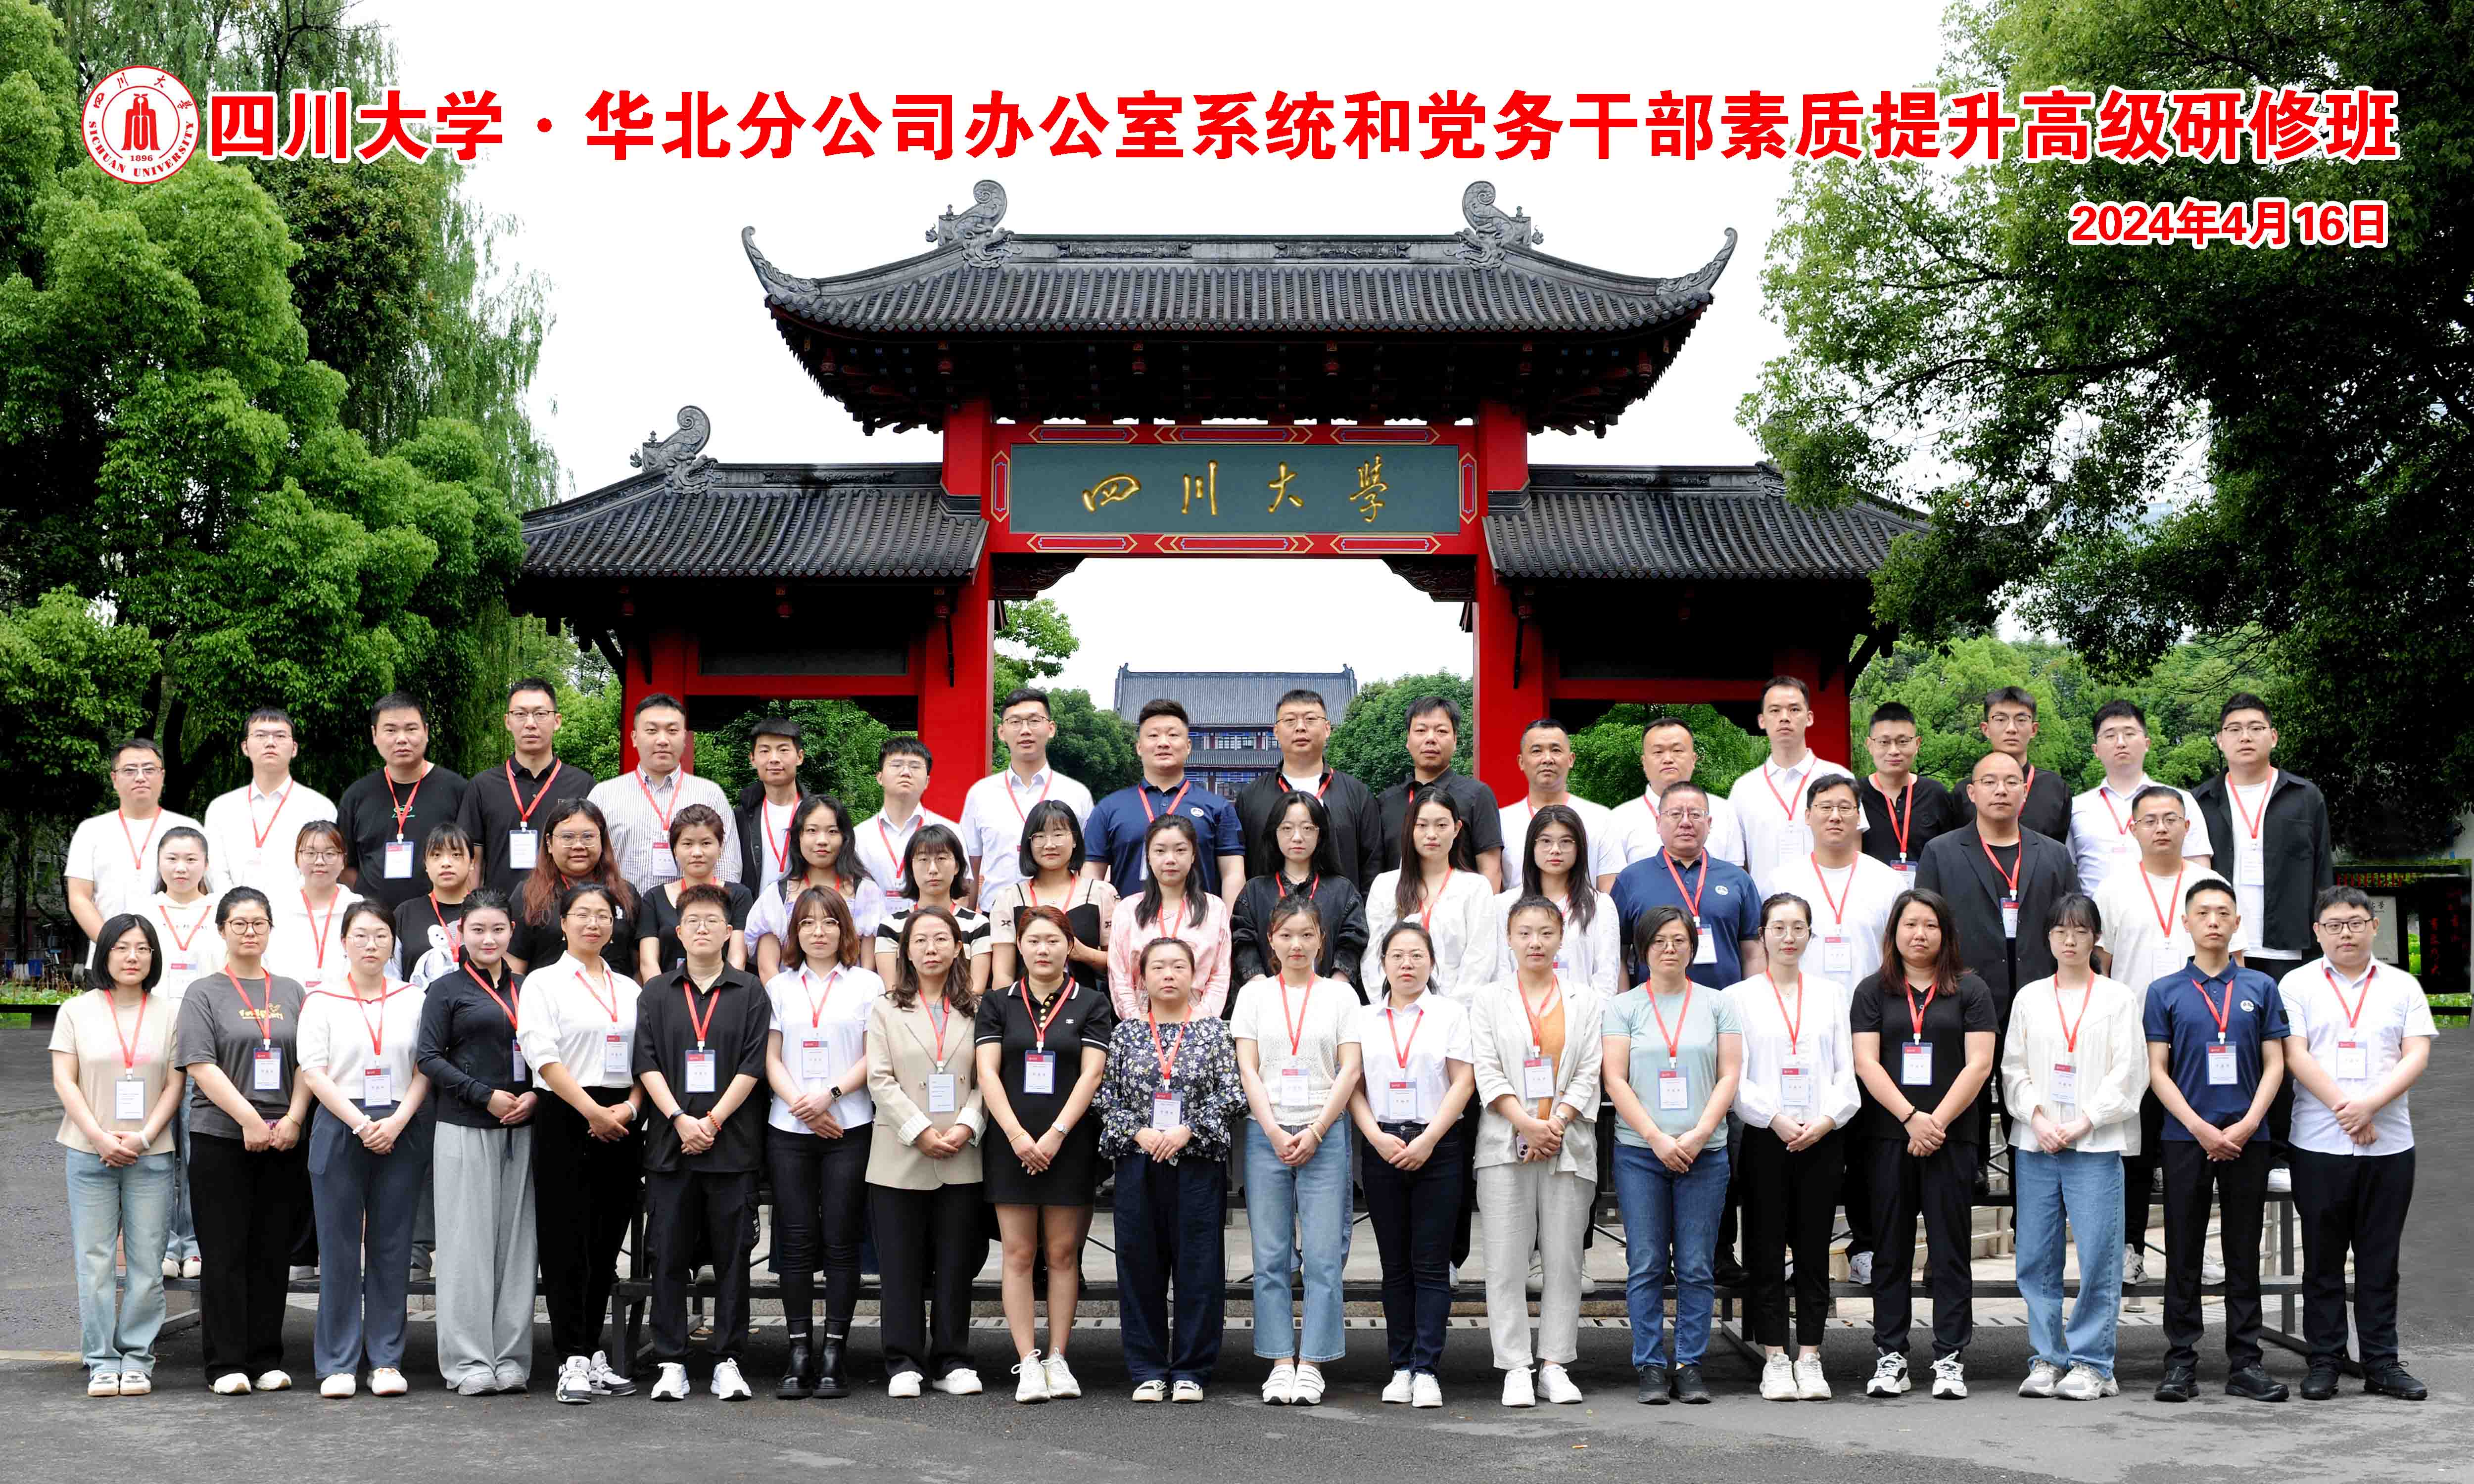 中铁集团华北分公司办公室系统和党务干部素质提升高级研修班在校举办